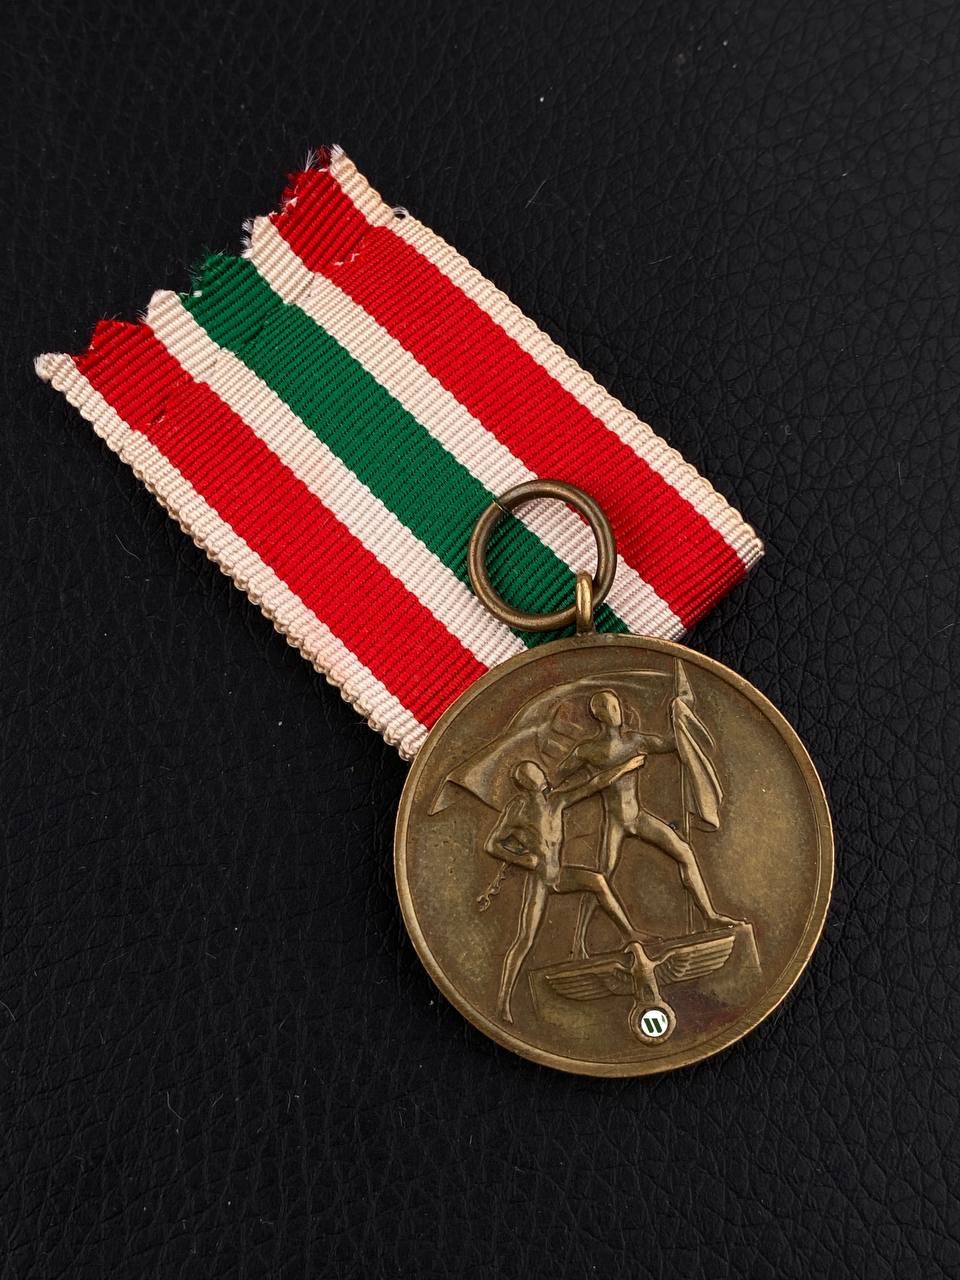 Медаль за присоединение Мемеля. С клеймом медальера H.C. – берлинского медальера и скульптора профессора Эдуарда Ханиш-Конси (Eduard Hanisch-Concee).